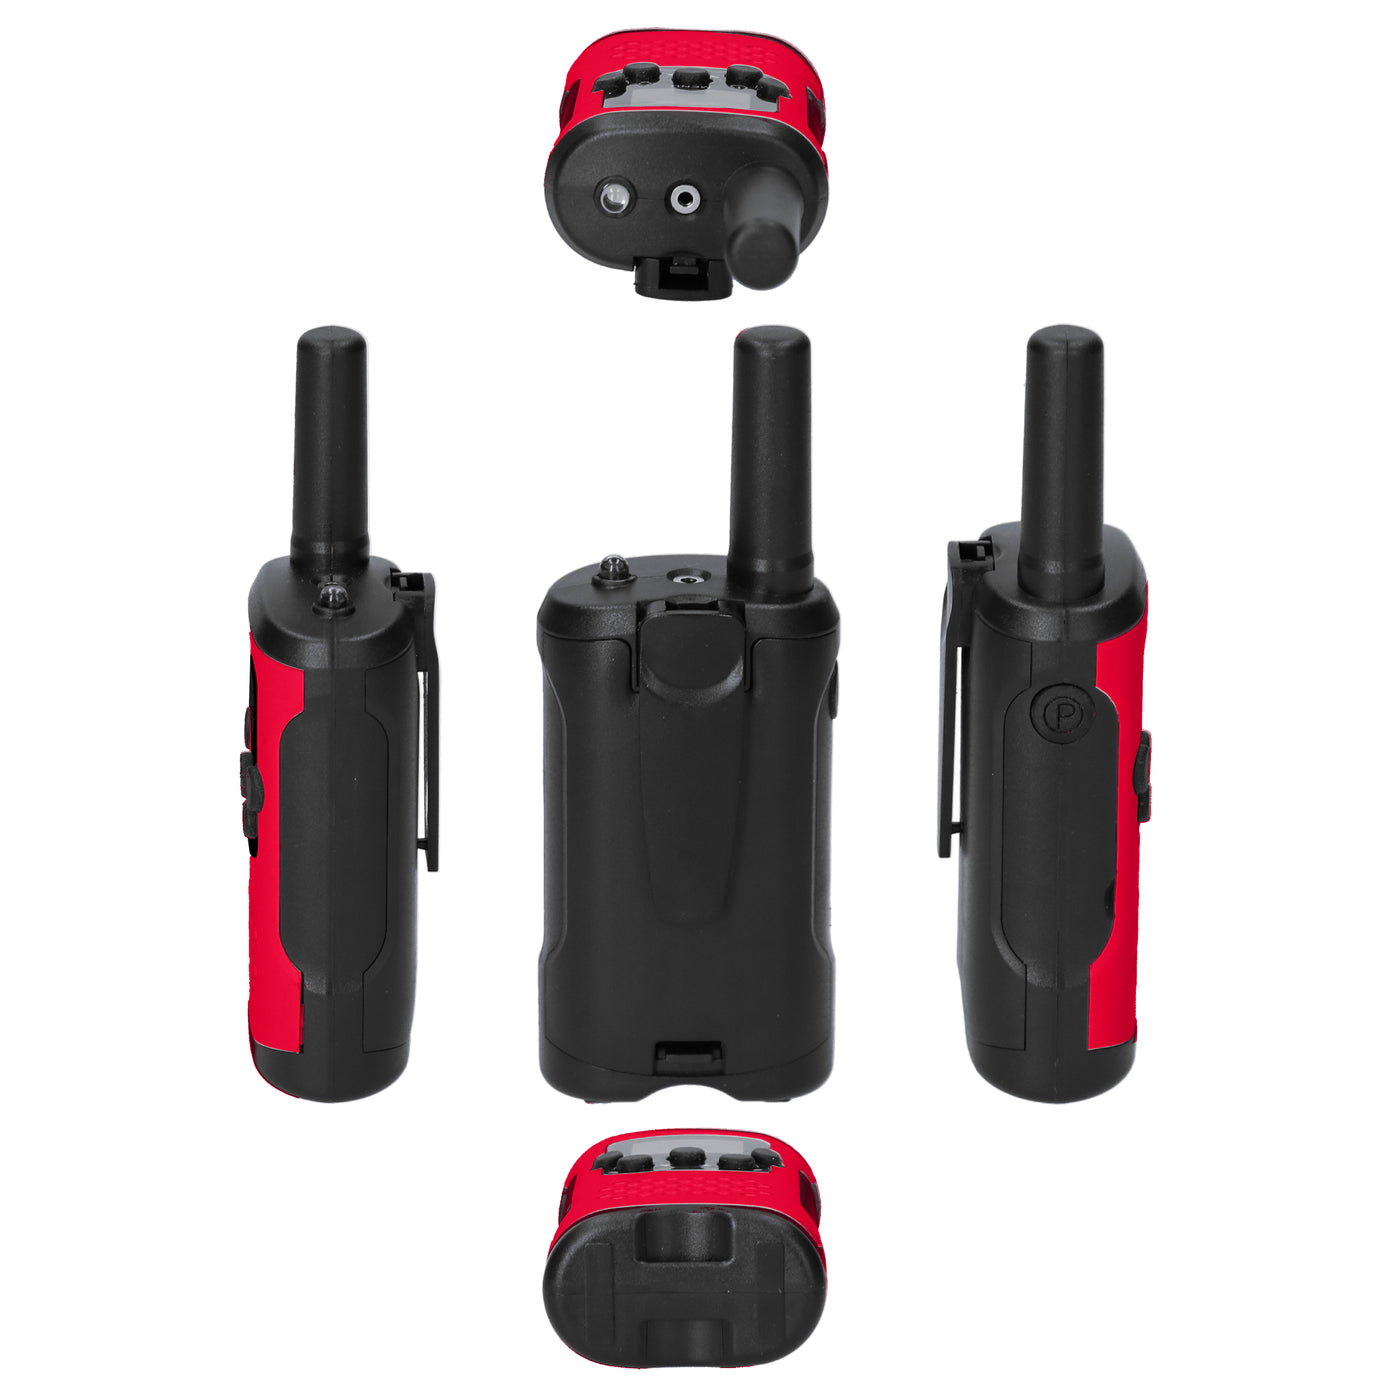 Alecto FR115RD - Set van twee walkie talkies voor kinderen, 7 KM bereik, rood/zwart